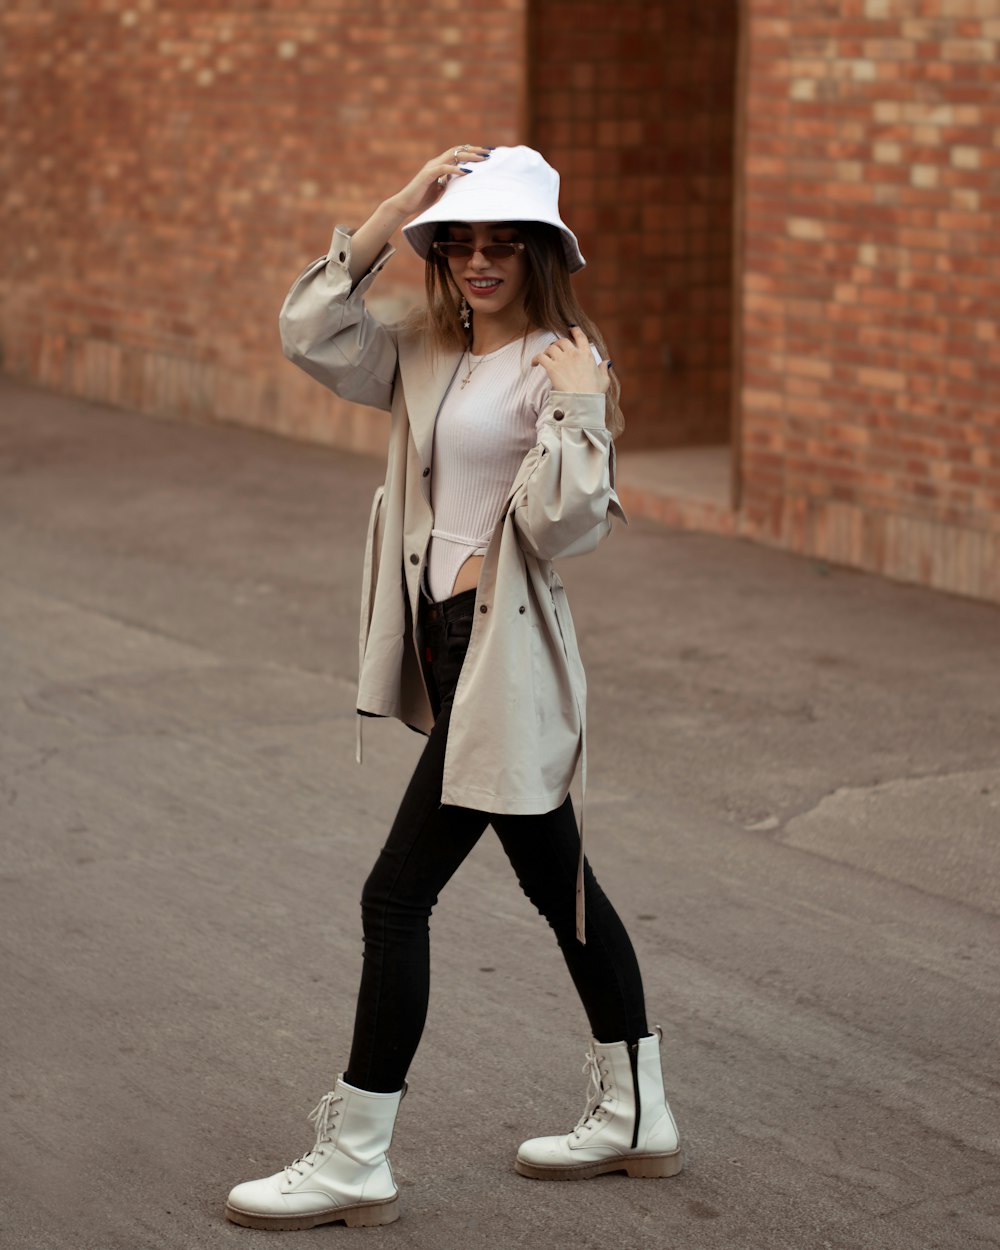 a woman walking down a street wearing a white hat